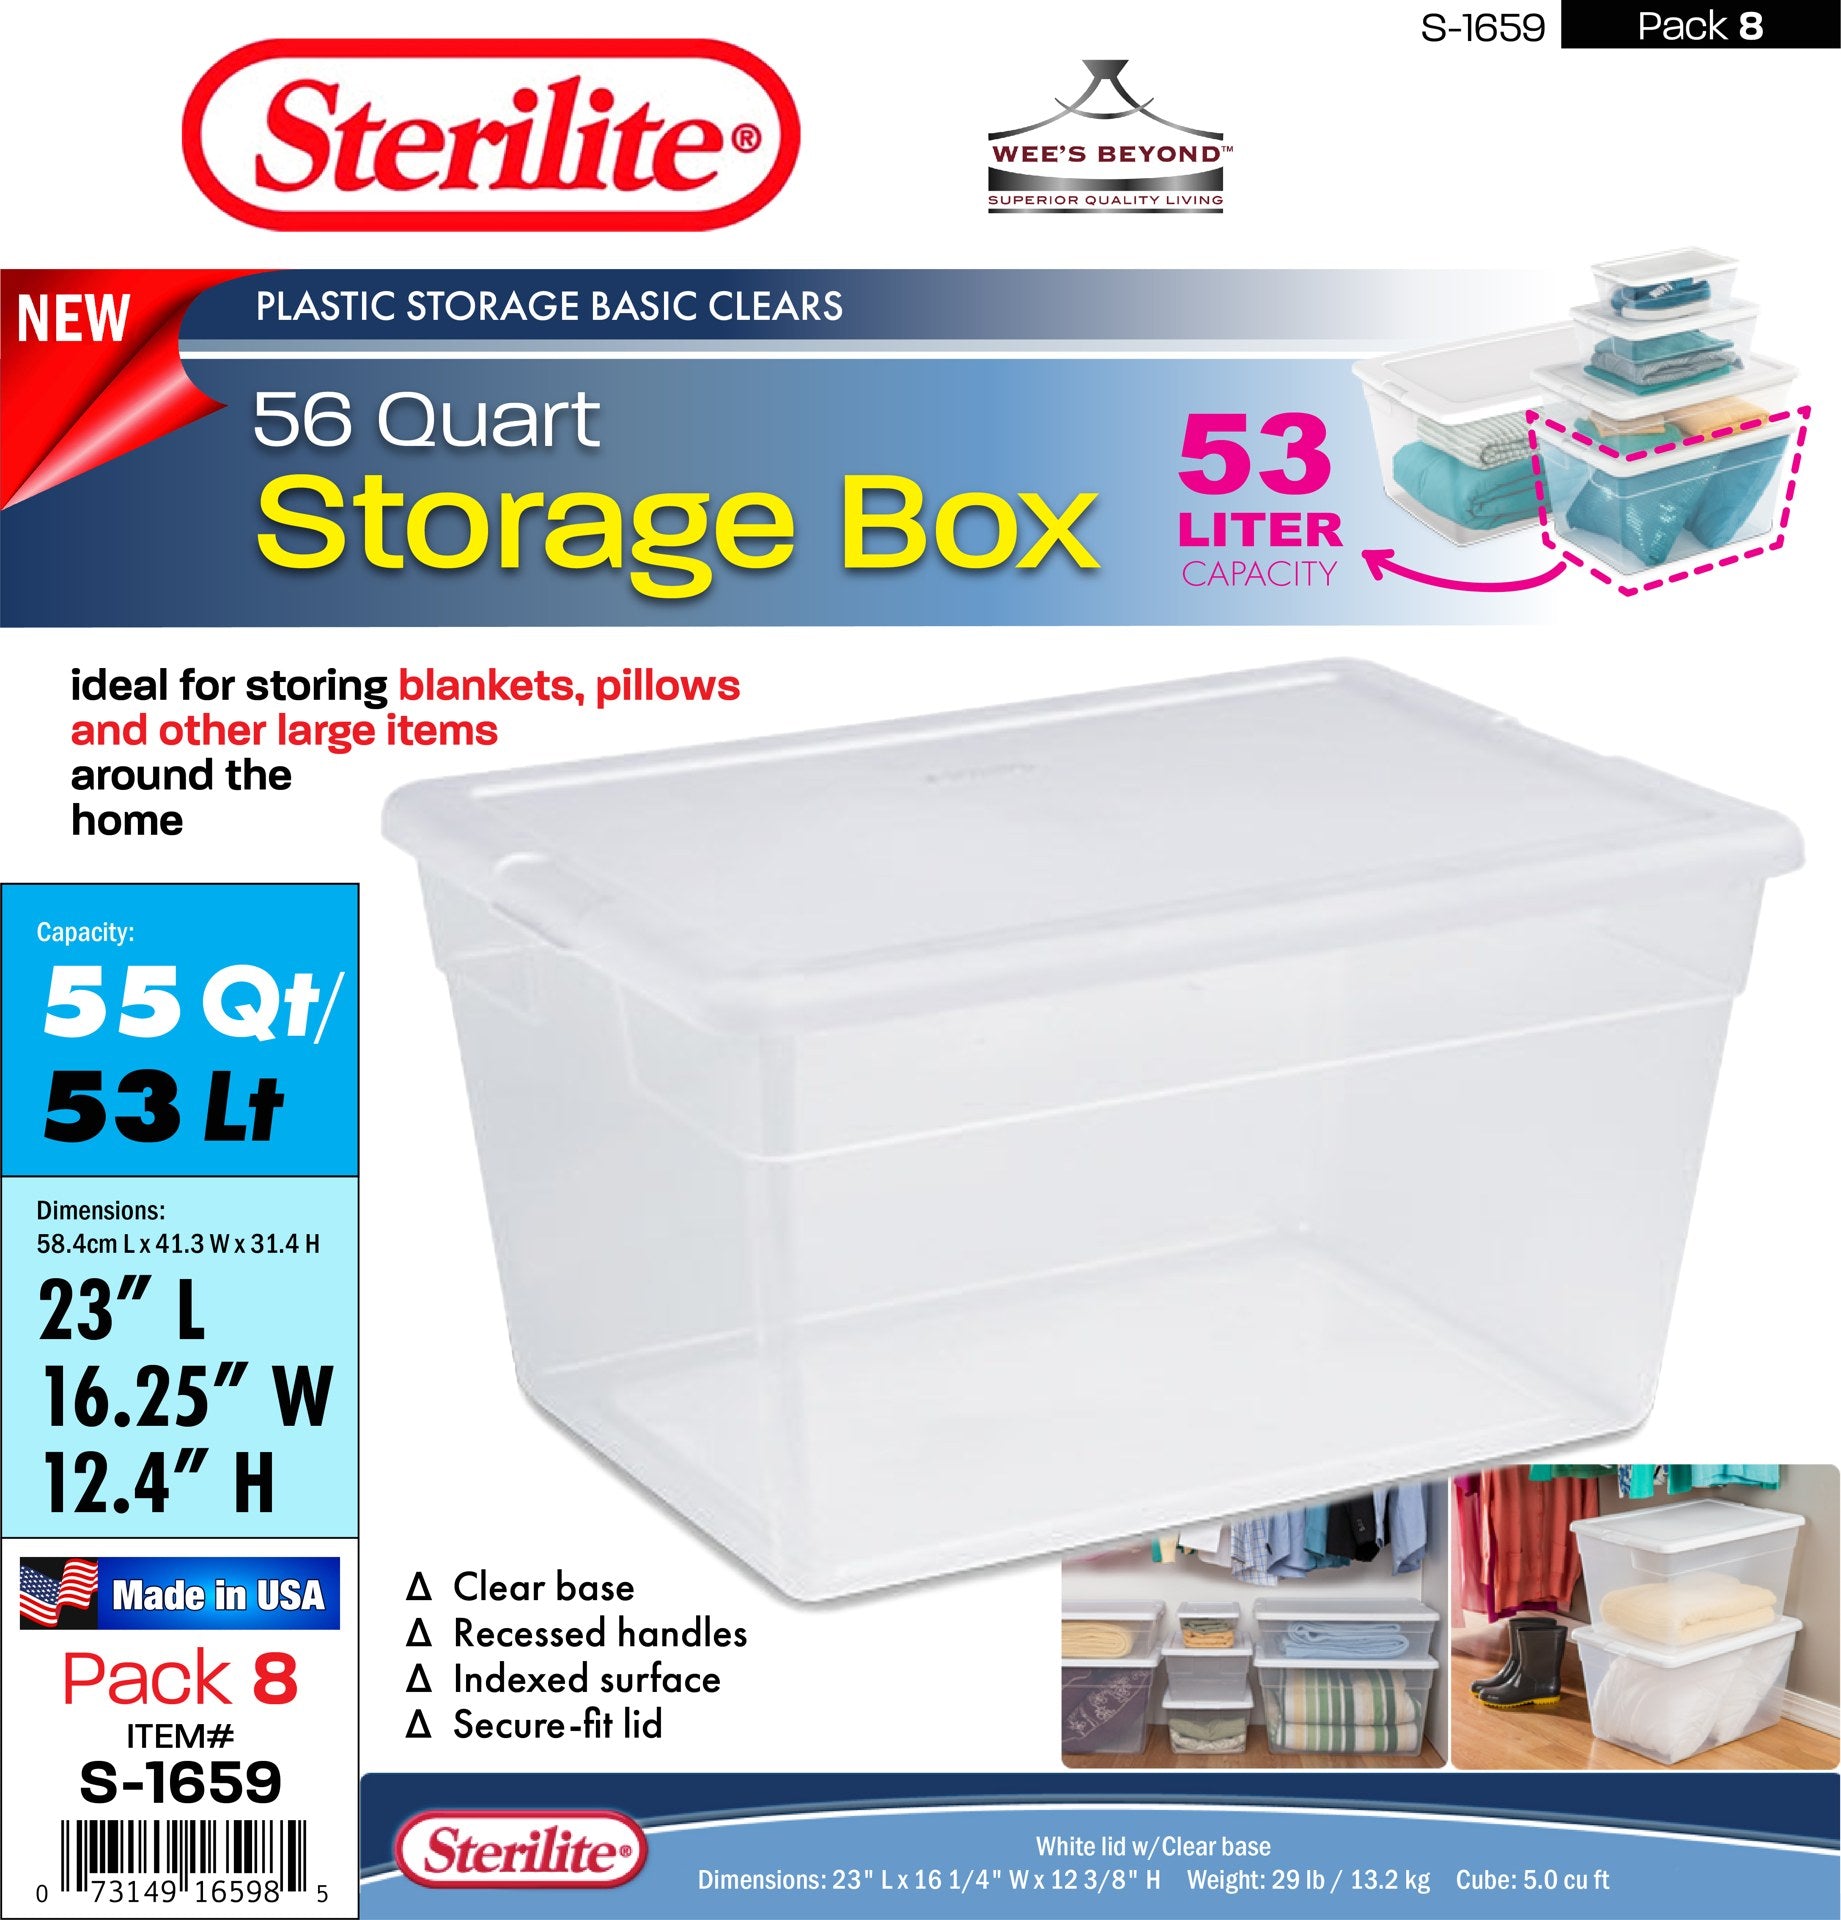 Sterilite 56 Quart/53 Liter Storage Box, White Lid w/ Clear Base